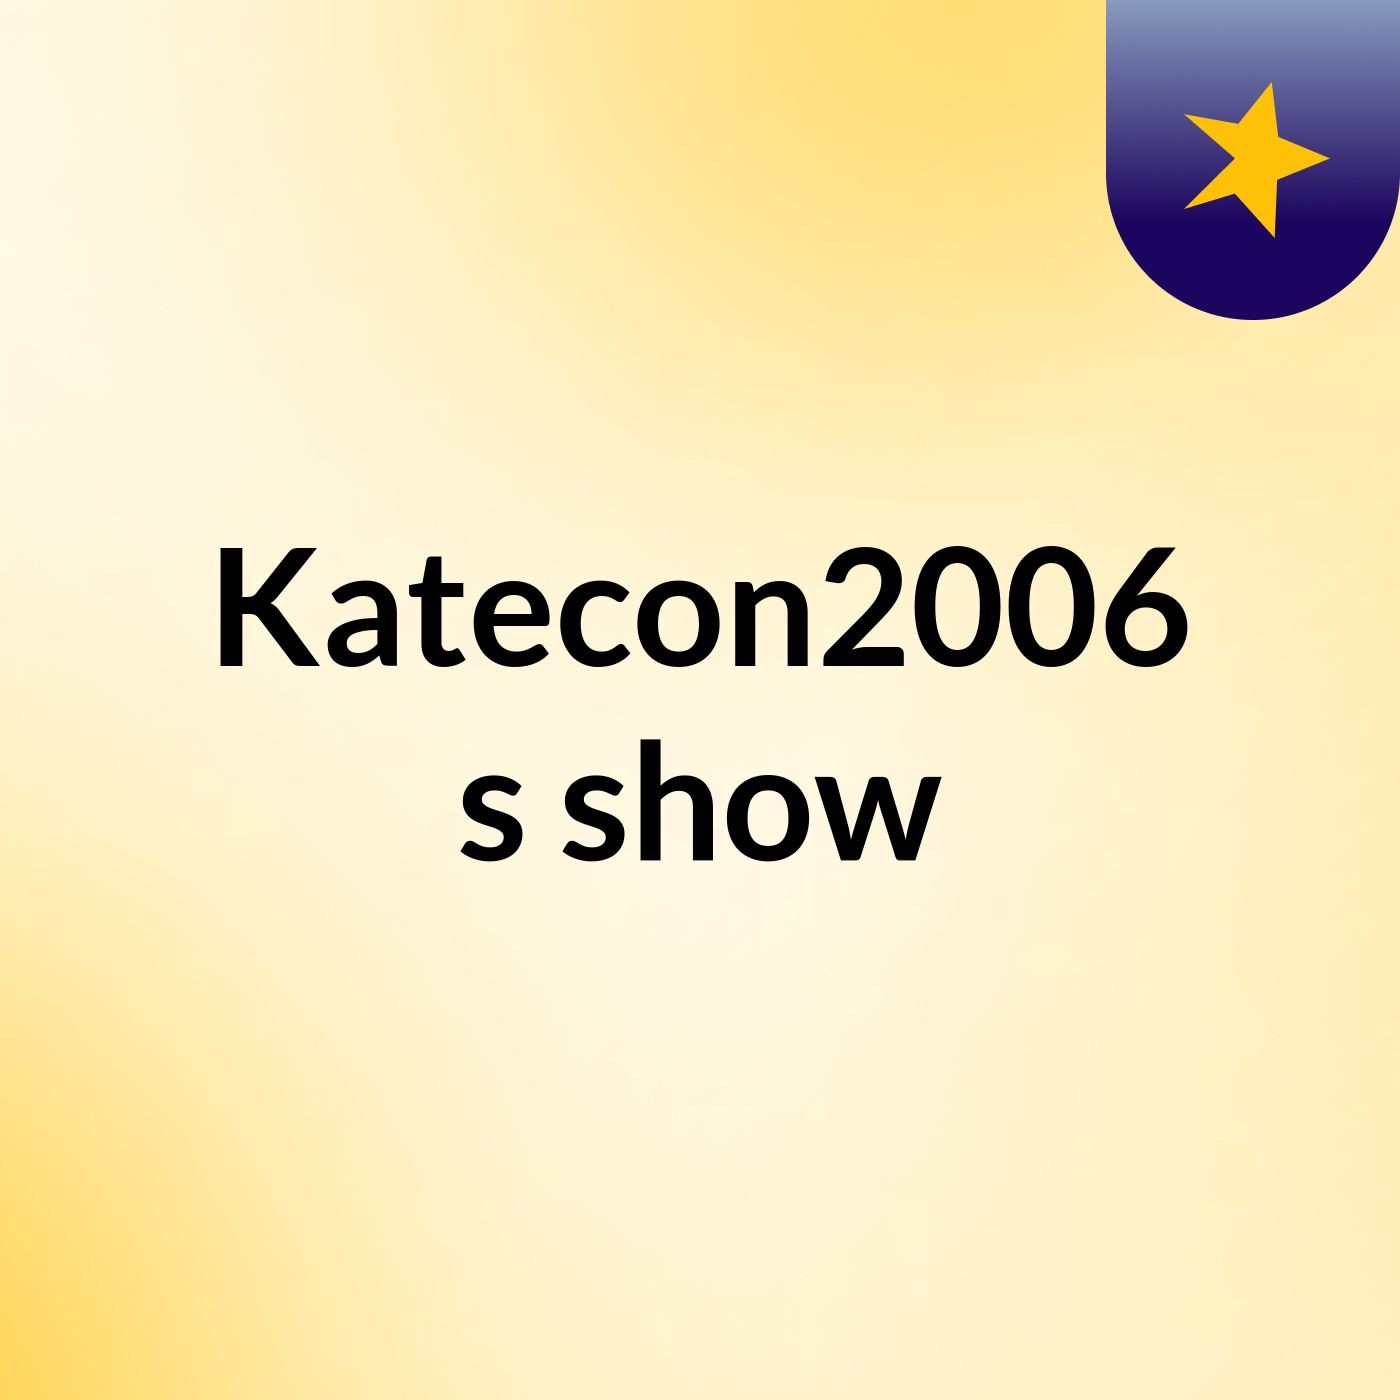 Katecon2006's show